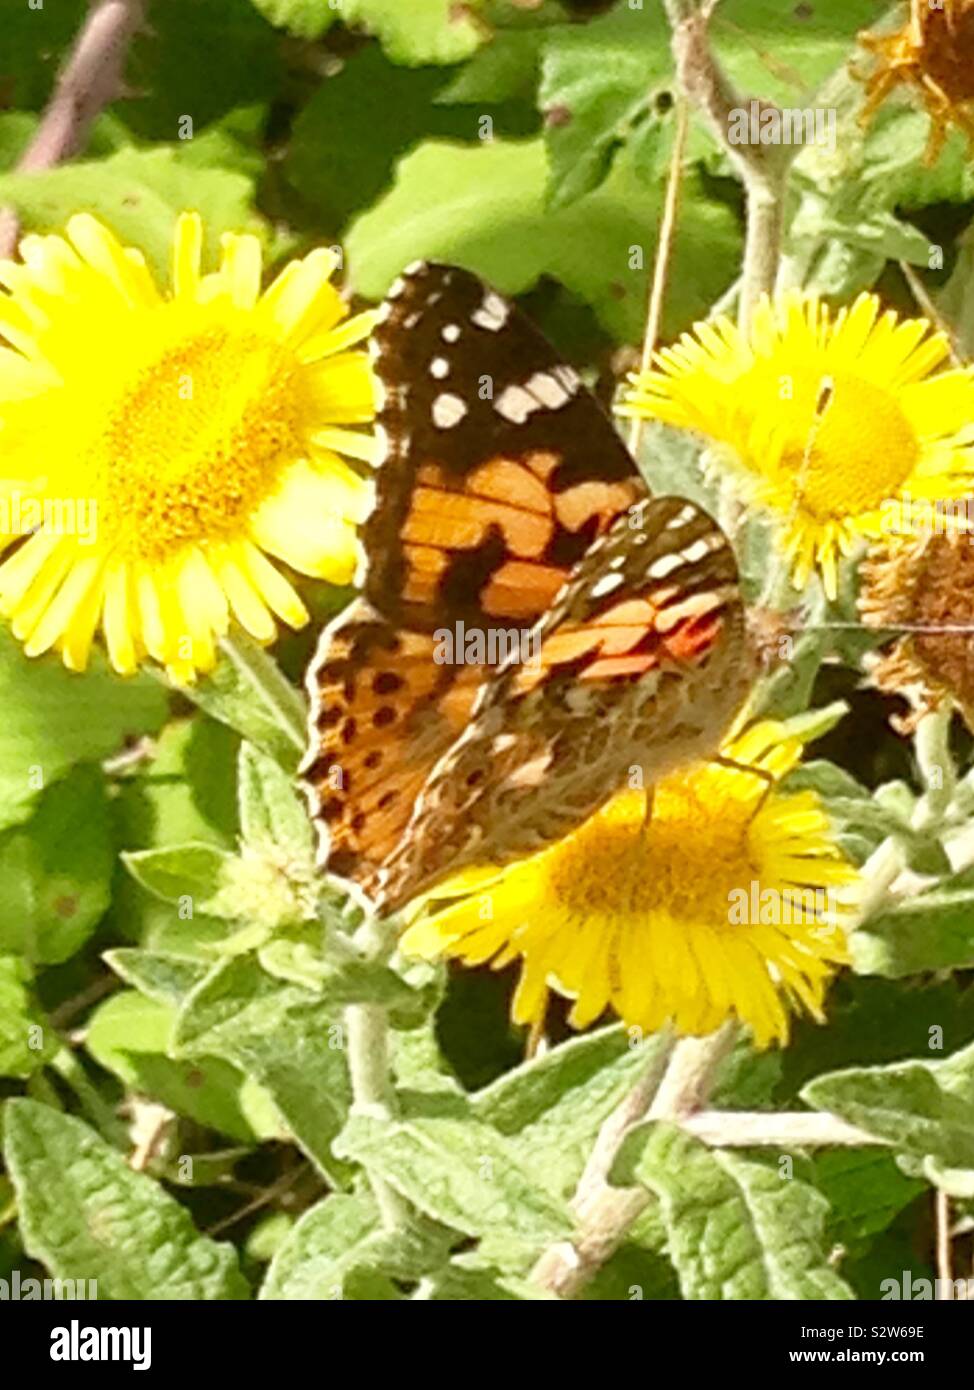 Painted Lady butterfly Foto de stock